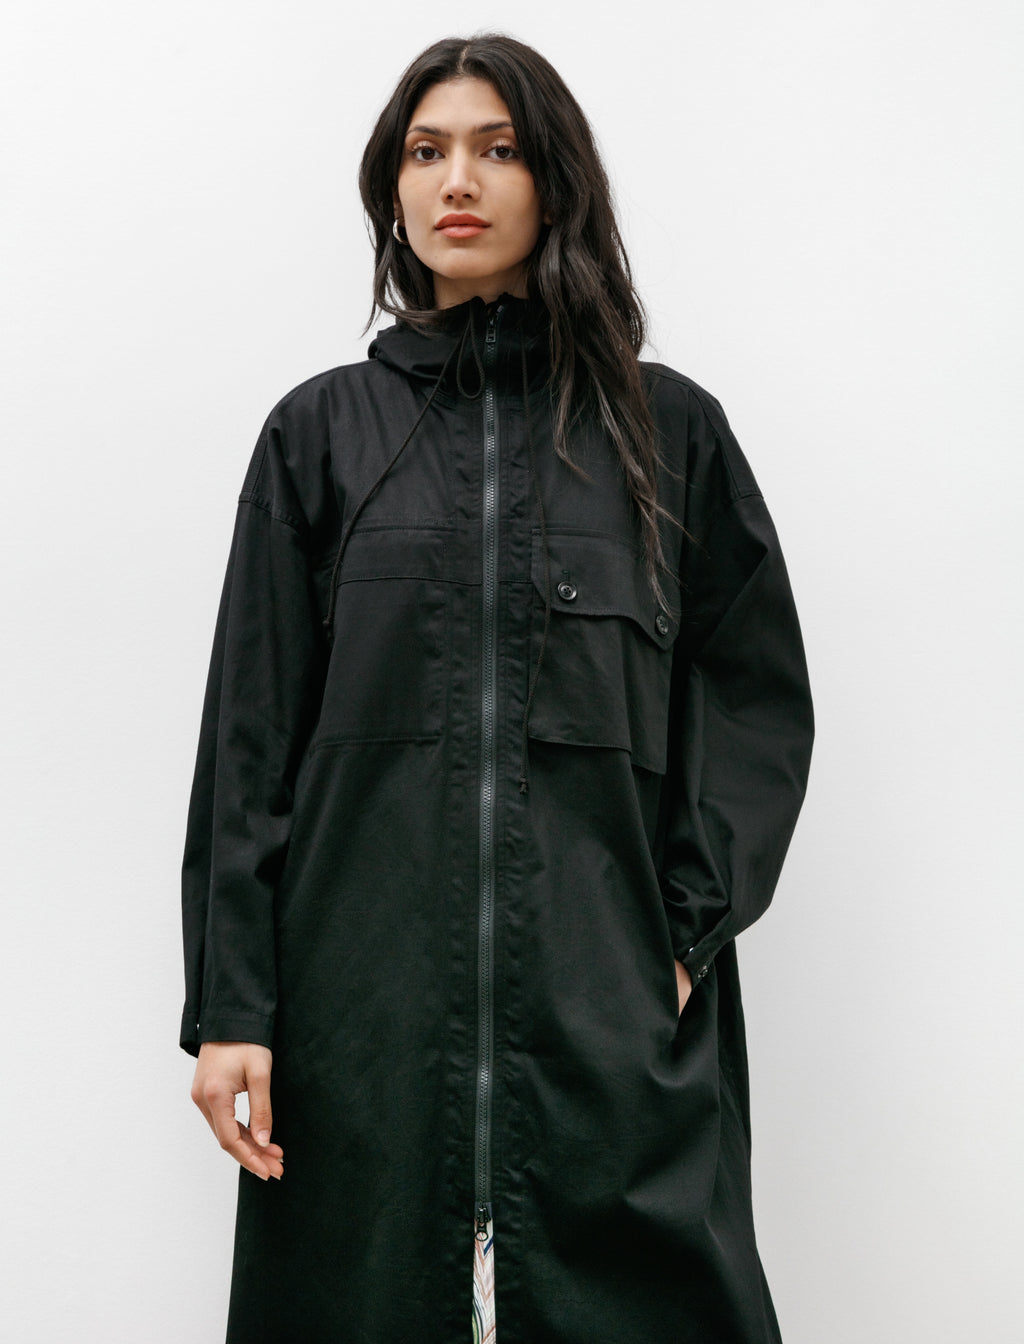 Coatdress with Hood Black